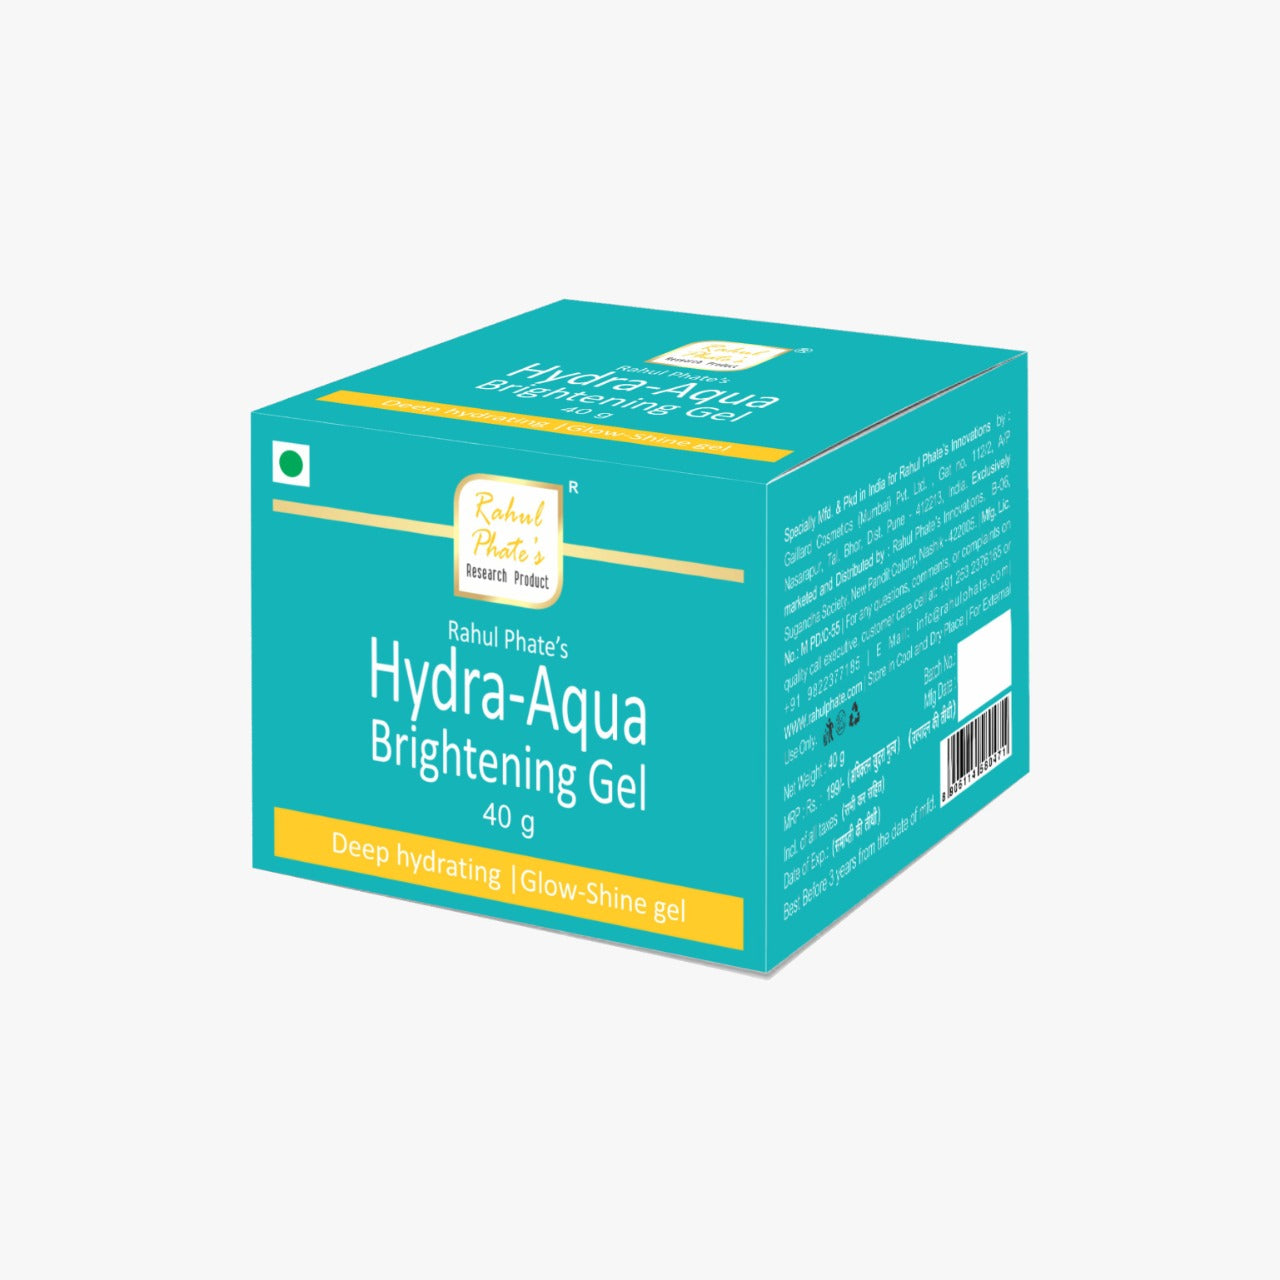 Hydra-Aqua Brightening Gel